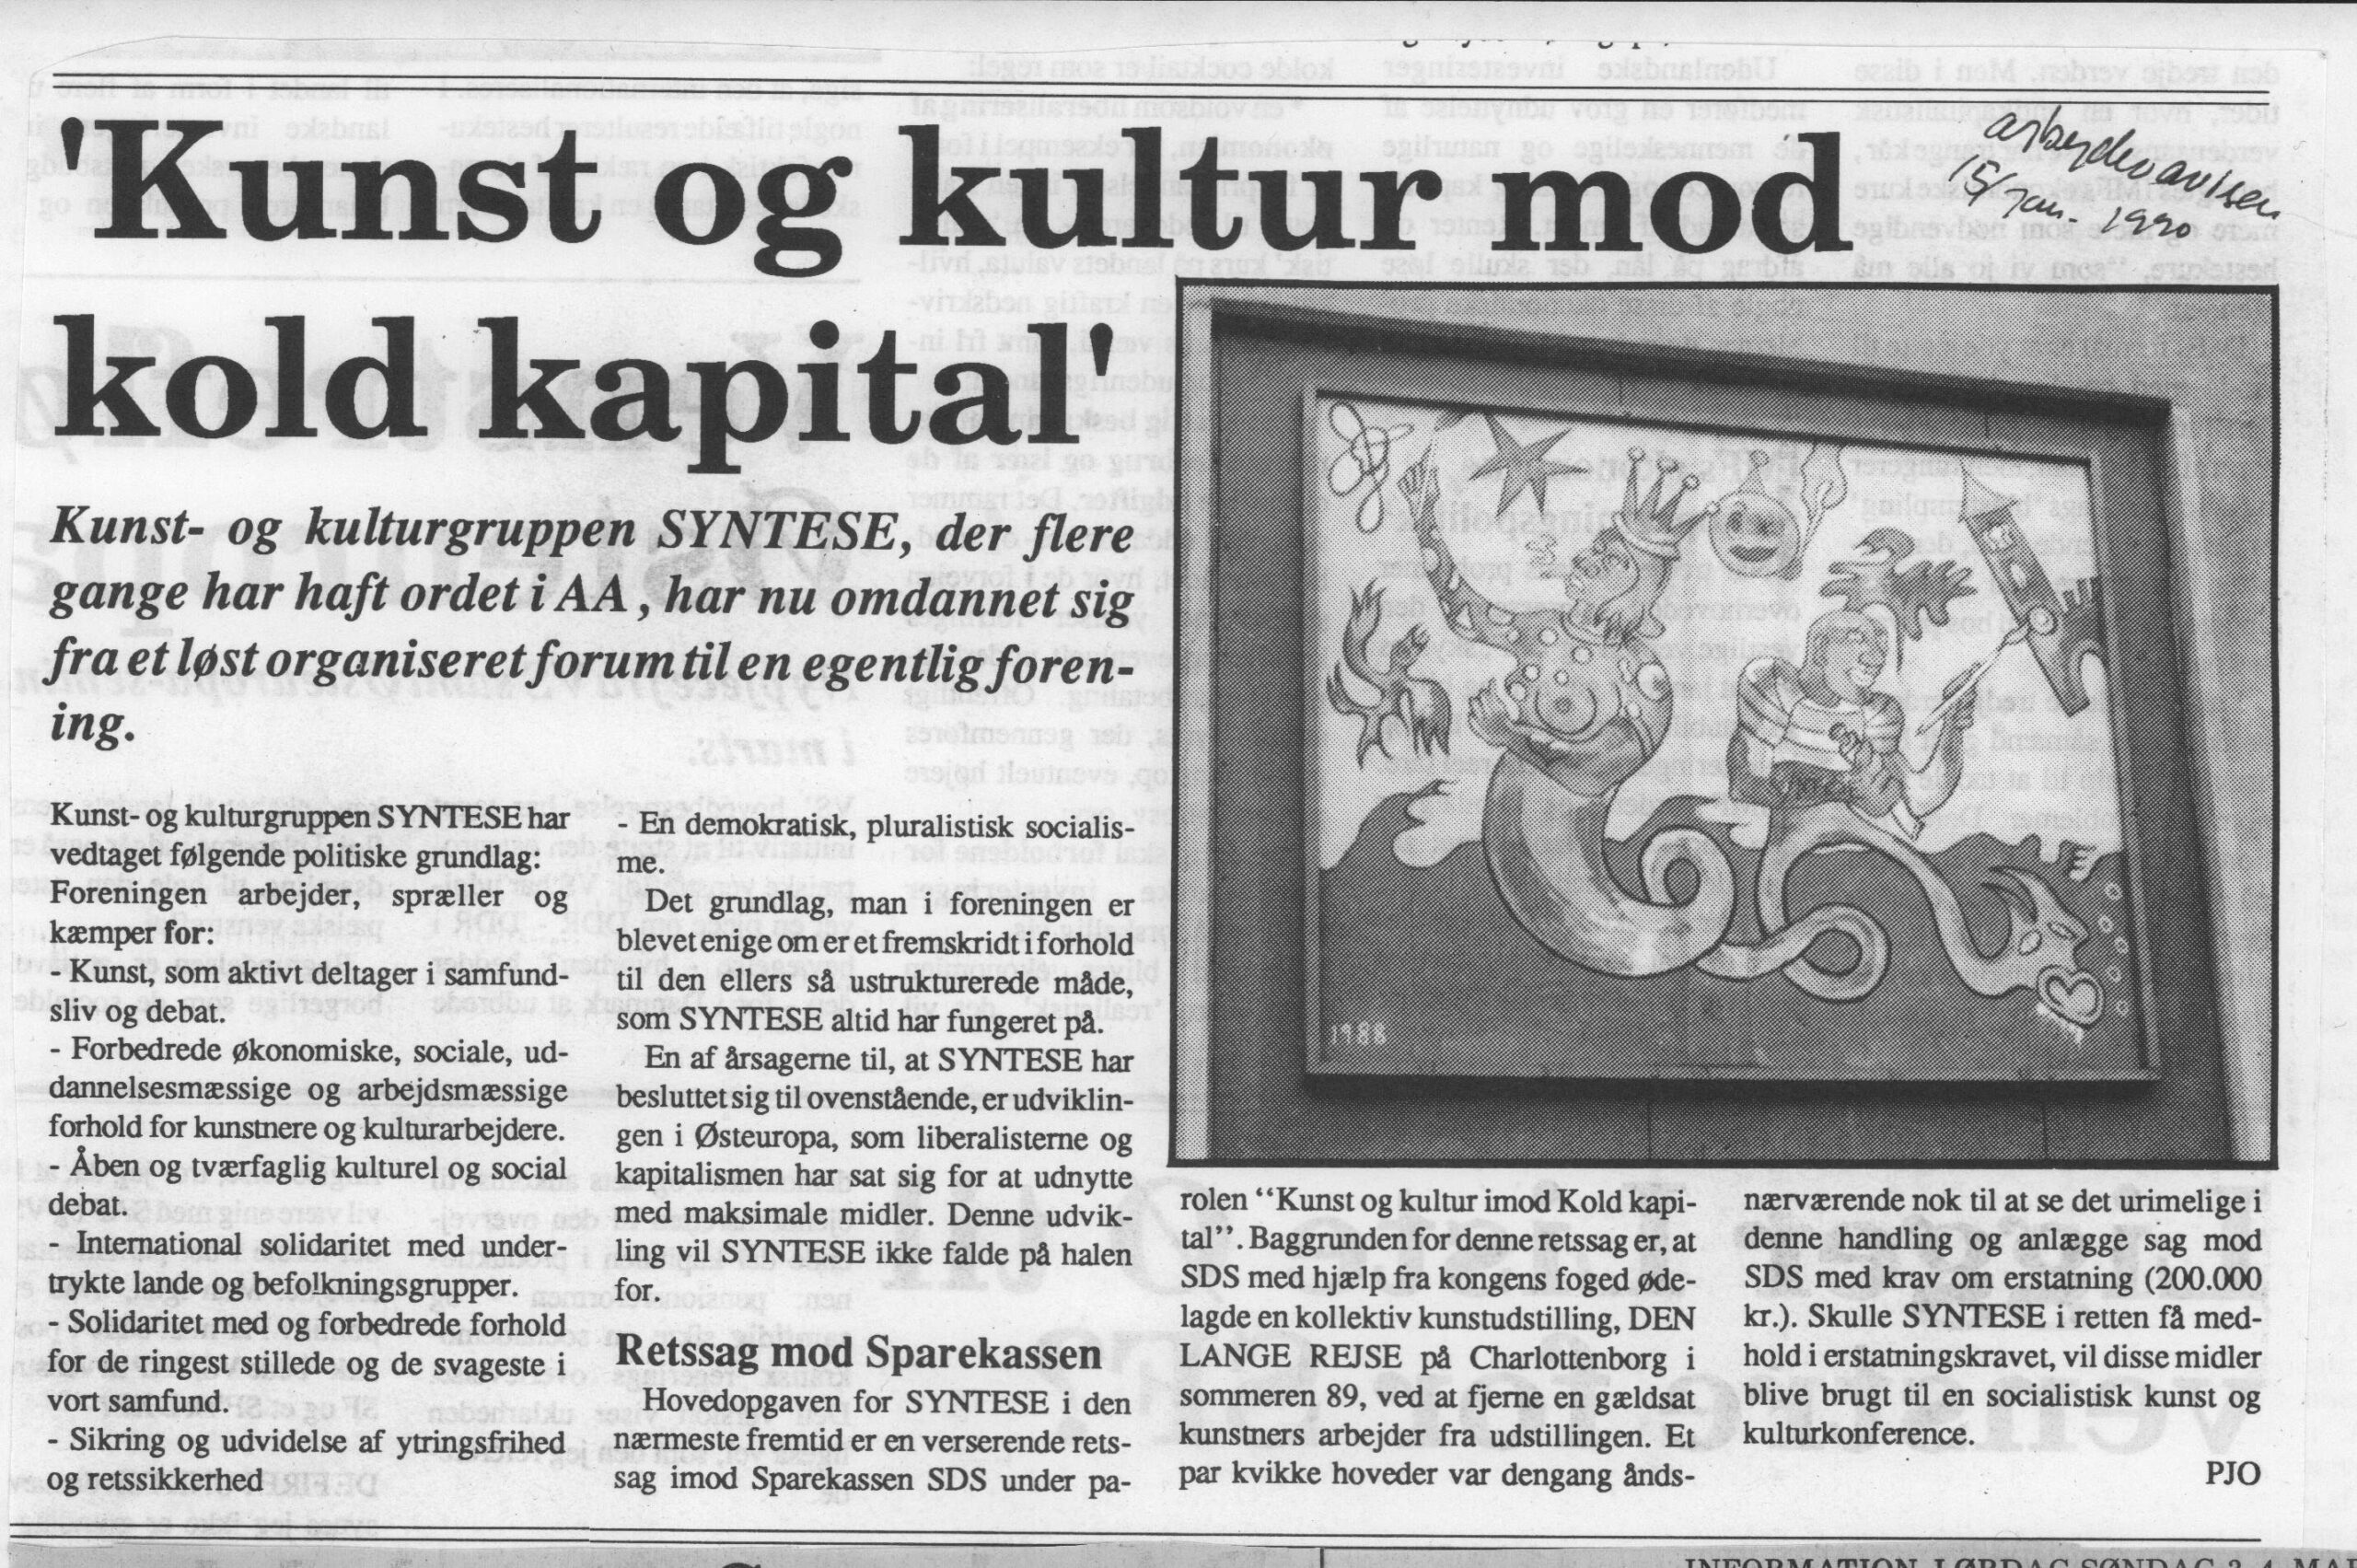 Kunst og kultur mod kold kapital. Omtale (Retssag. Den lange rejse. Charlottenborg 1989, København). pjo. Arbejderavisen.